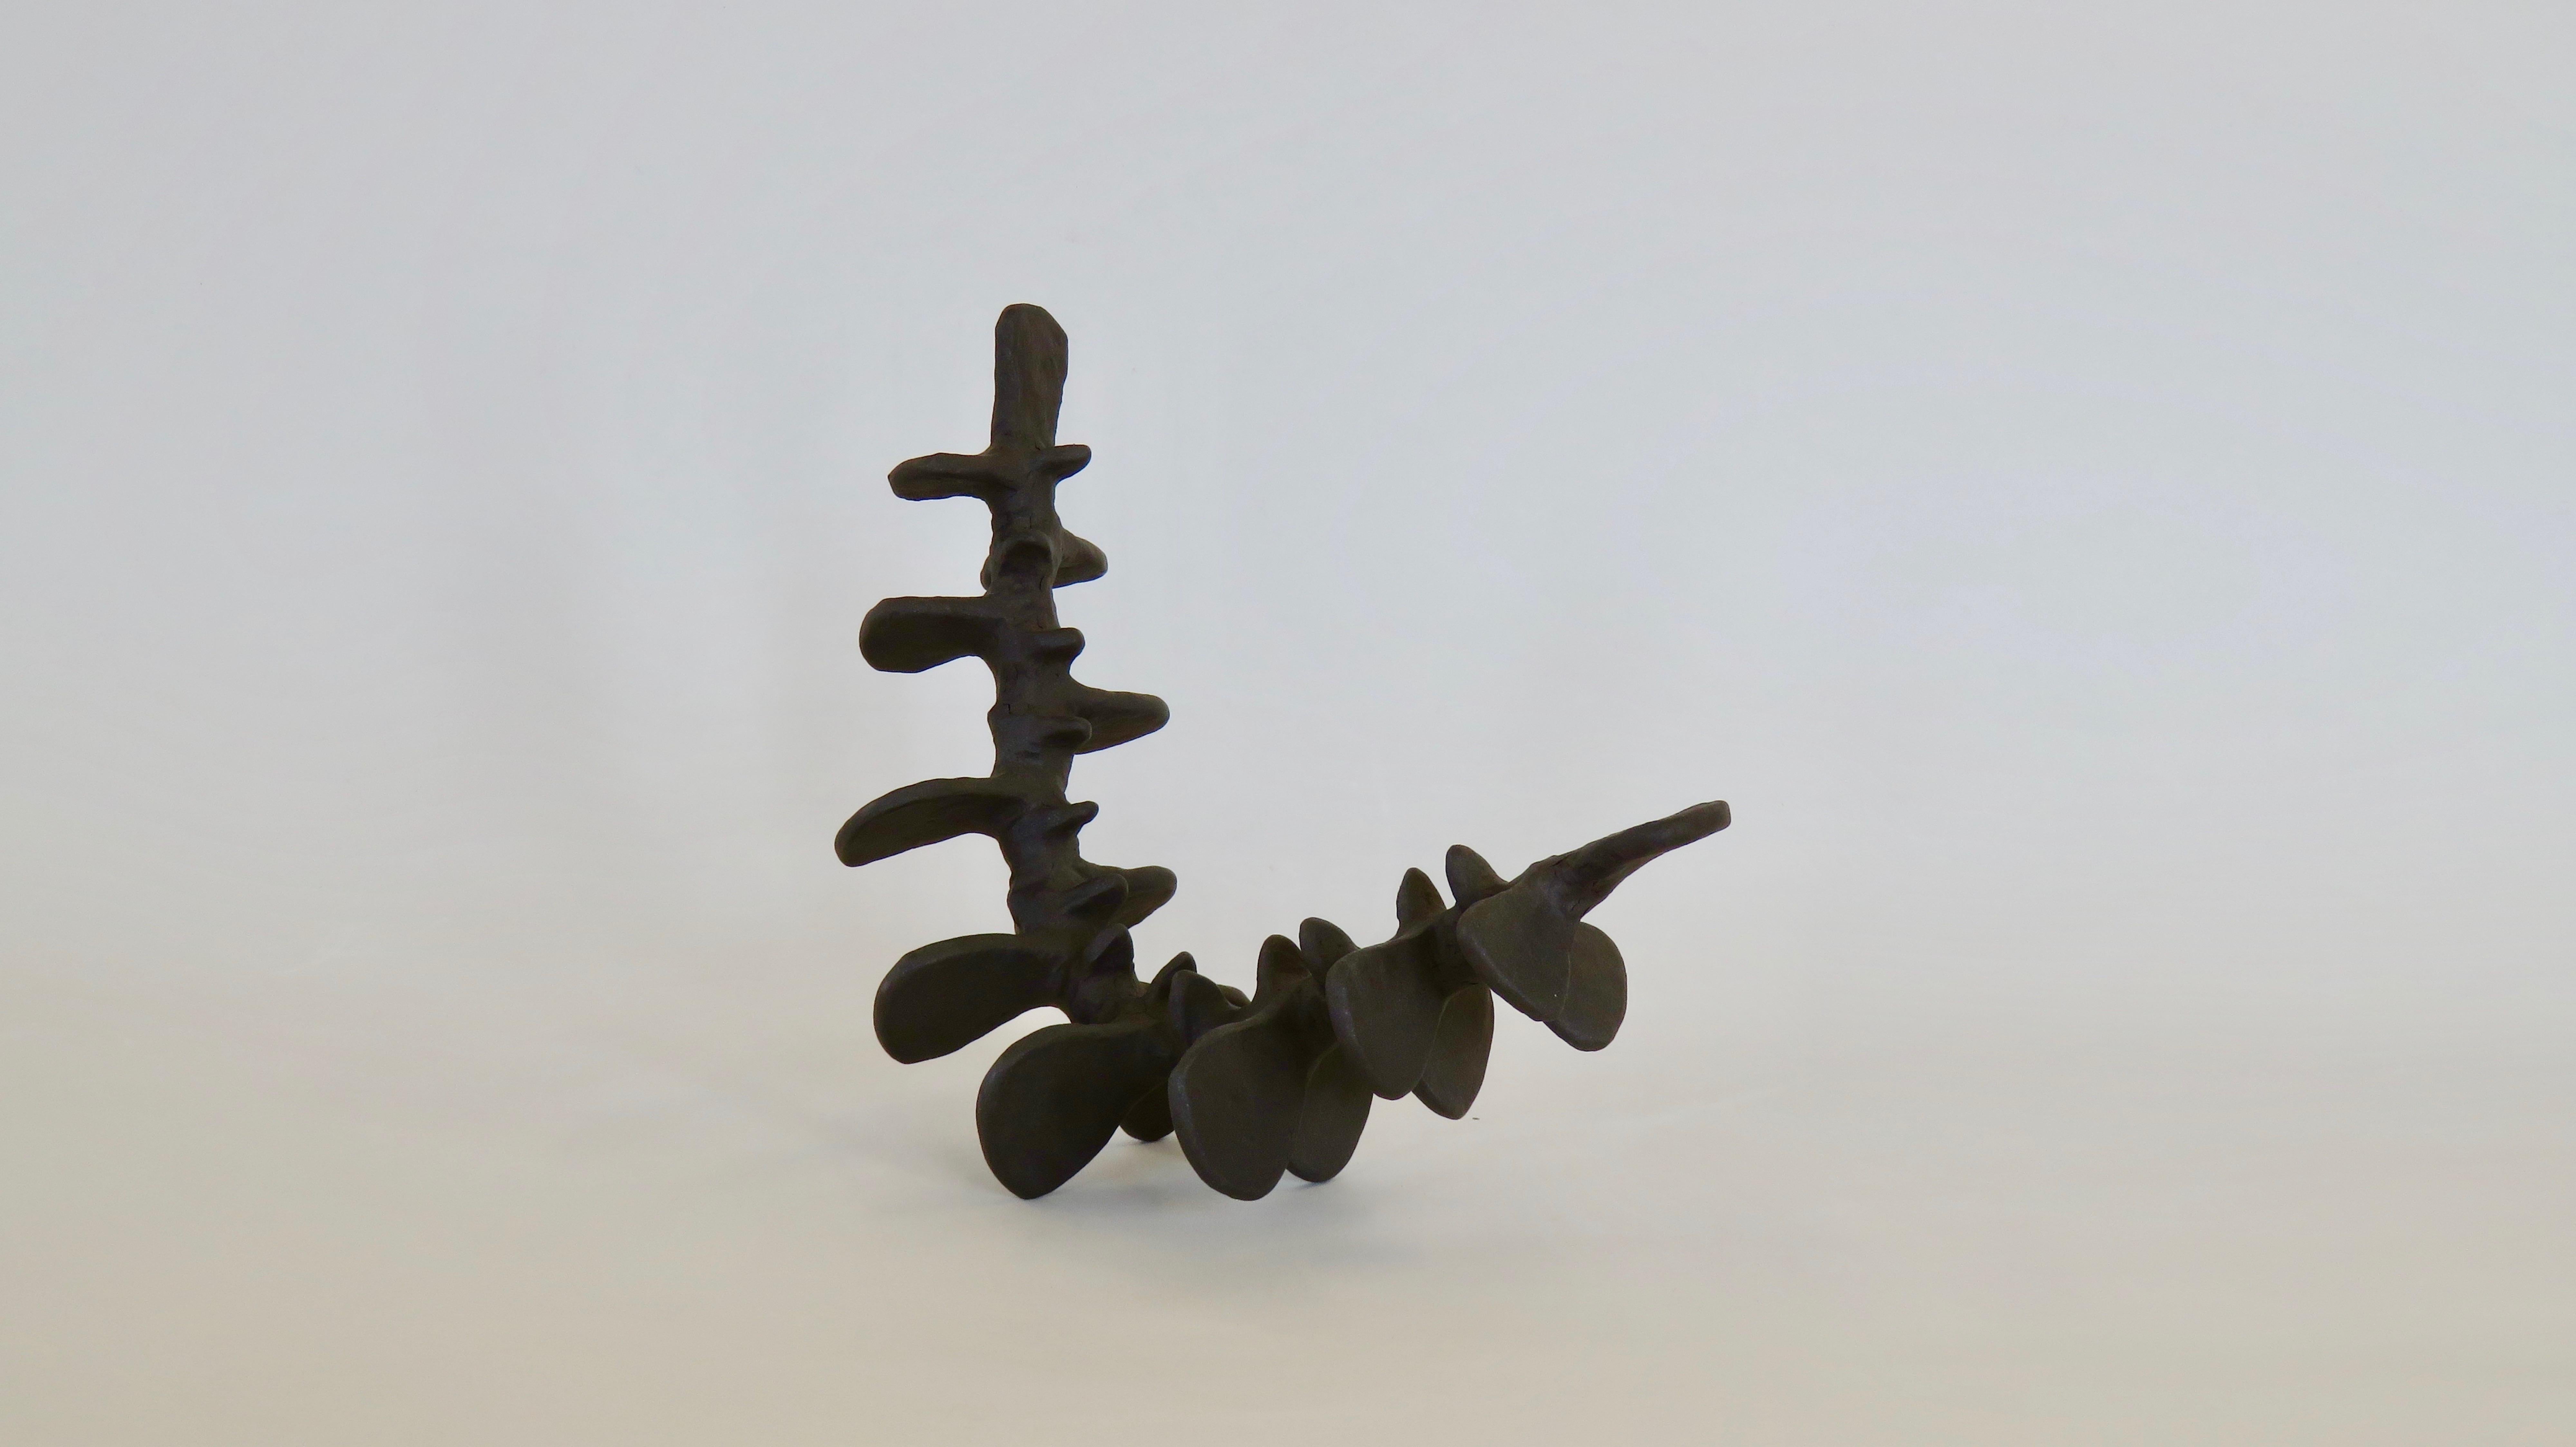 Deep Brown Spine-Like Ceramic Sculpture in Brown Stoneware, Hand Built (Keramik)